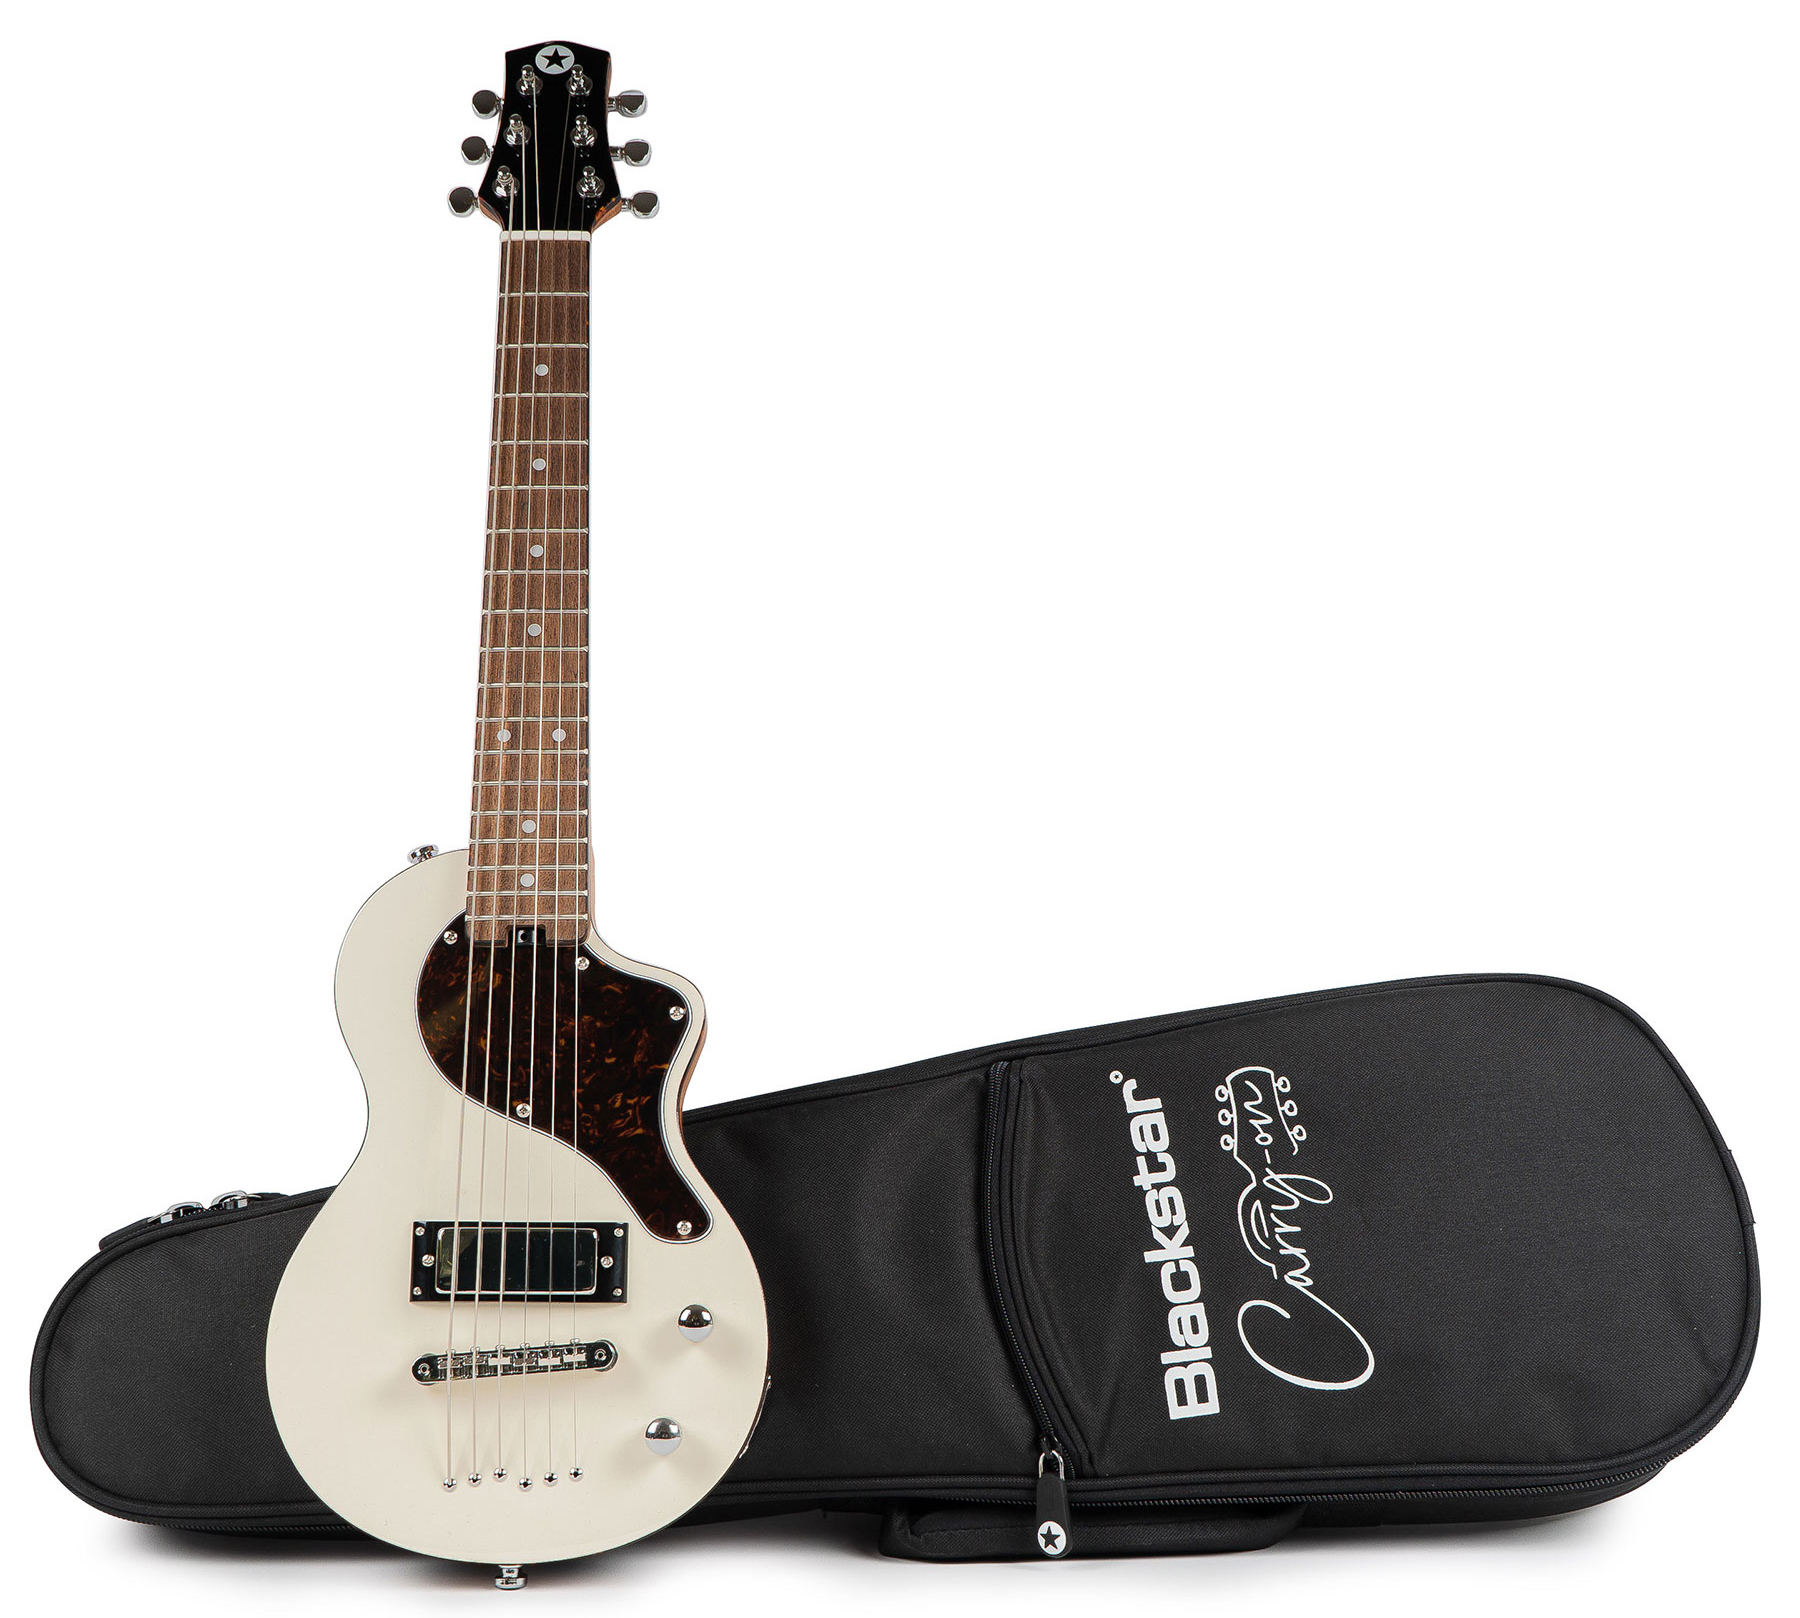 Blackstar Carry-on Travel Guitar +housse - White - Guitarra eléctrica de viaje - Variation 5